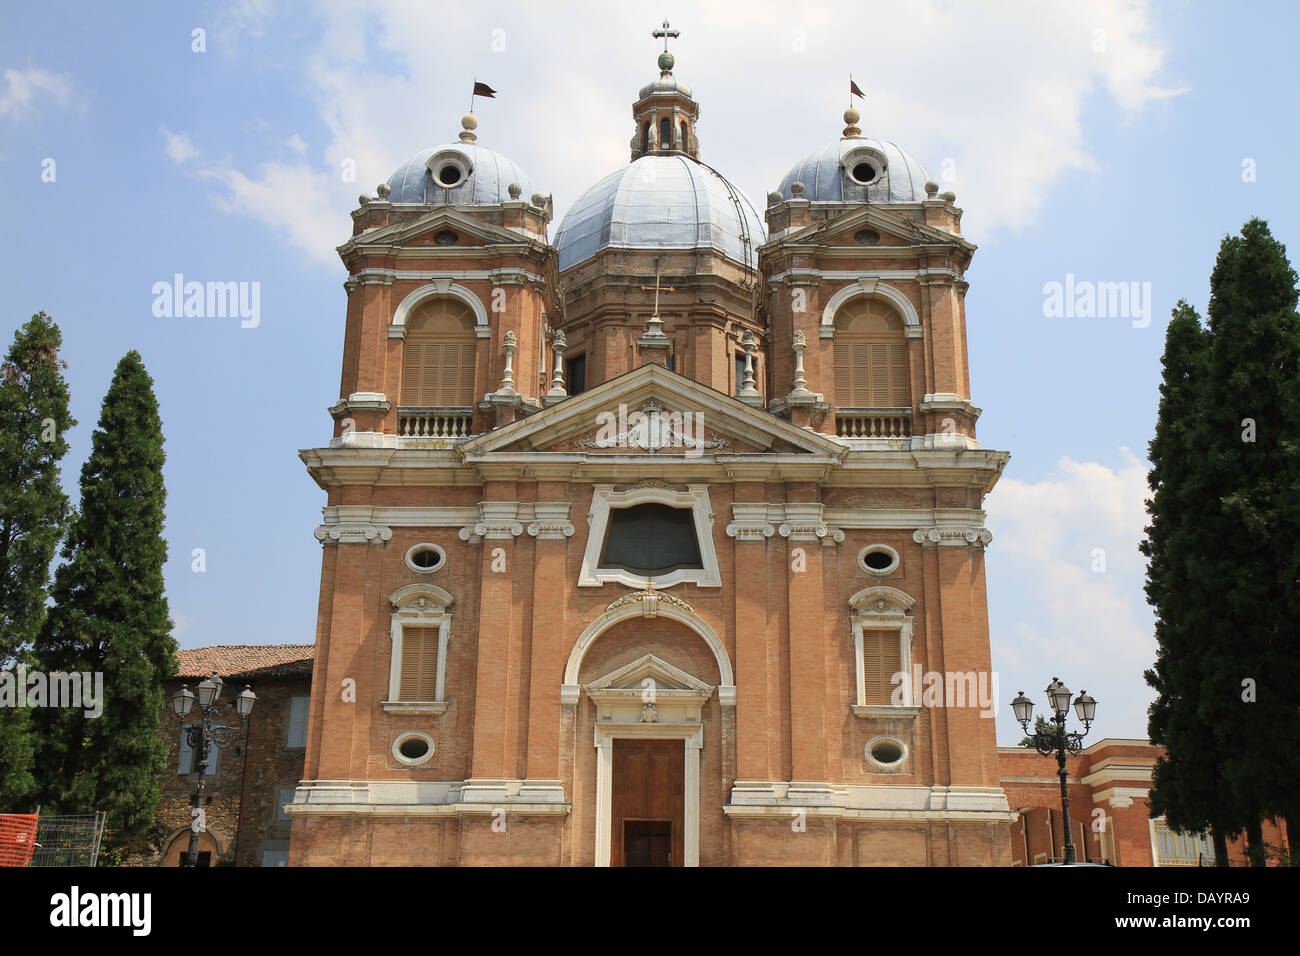 The Sanctuary of Beata Vergine del Castello in Fiorano Modenese, Italy. Stock Photo